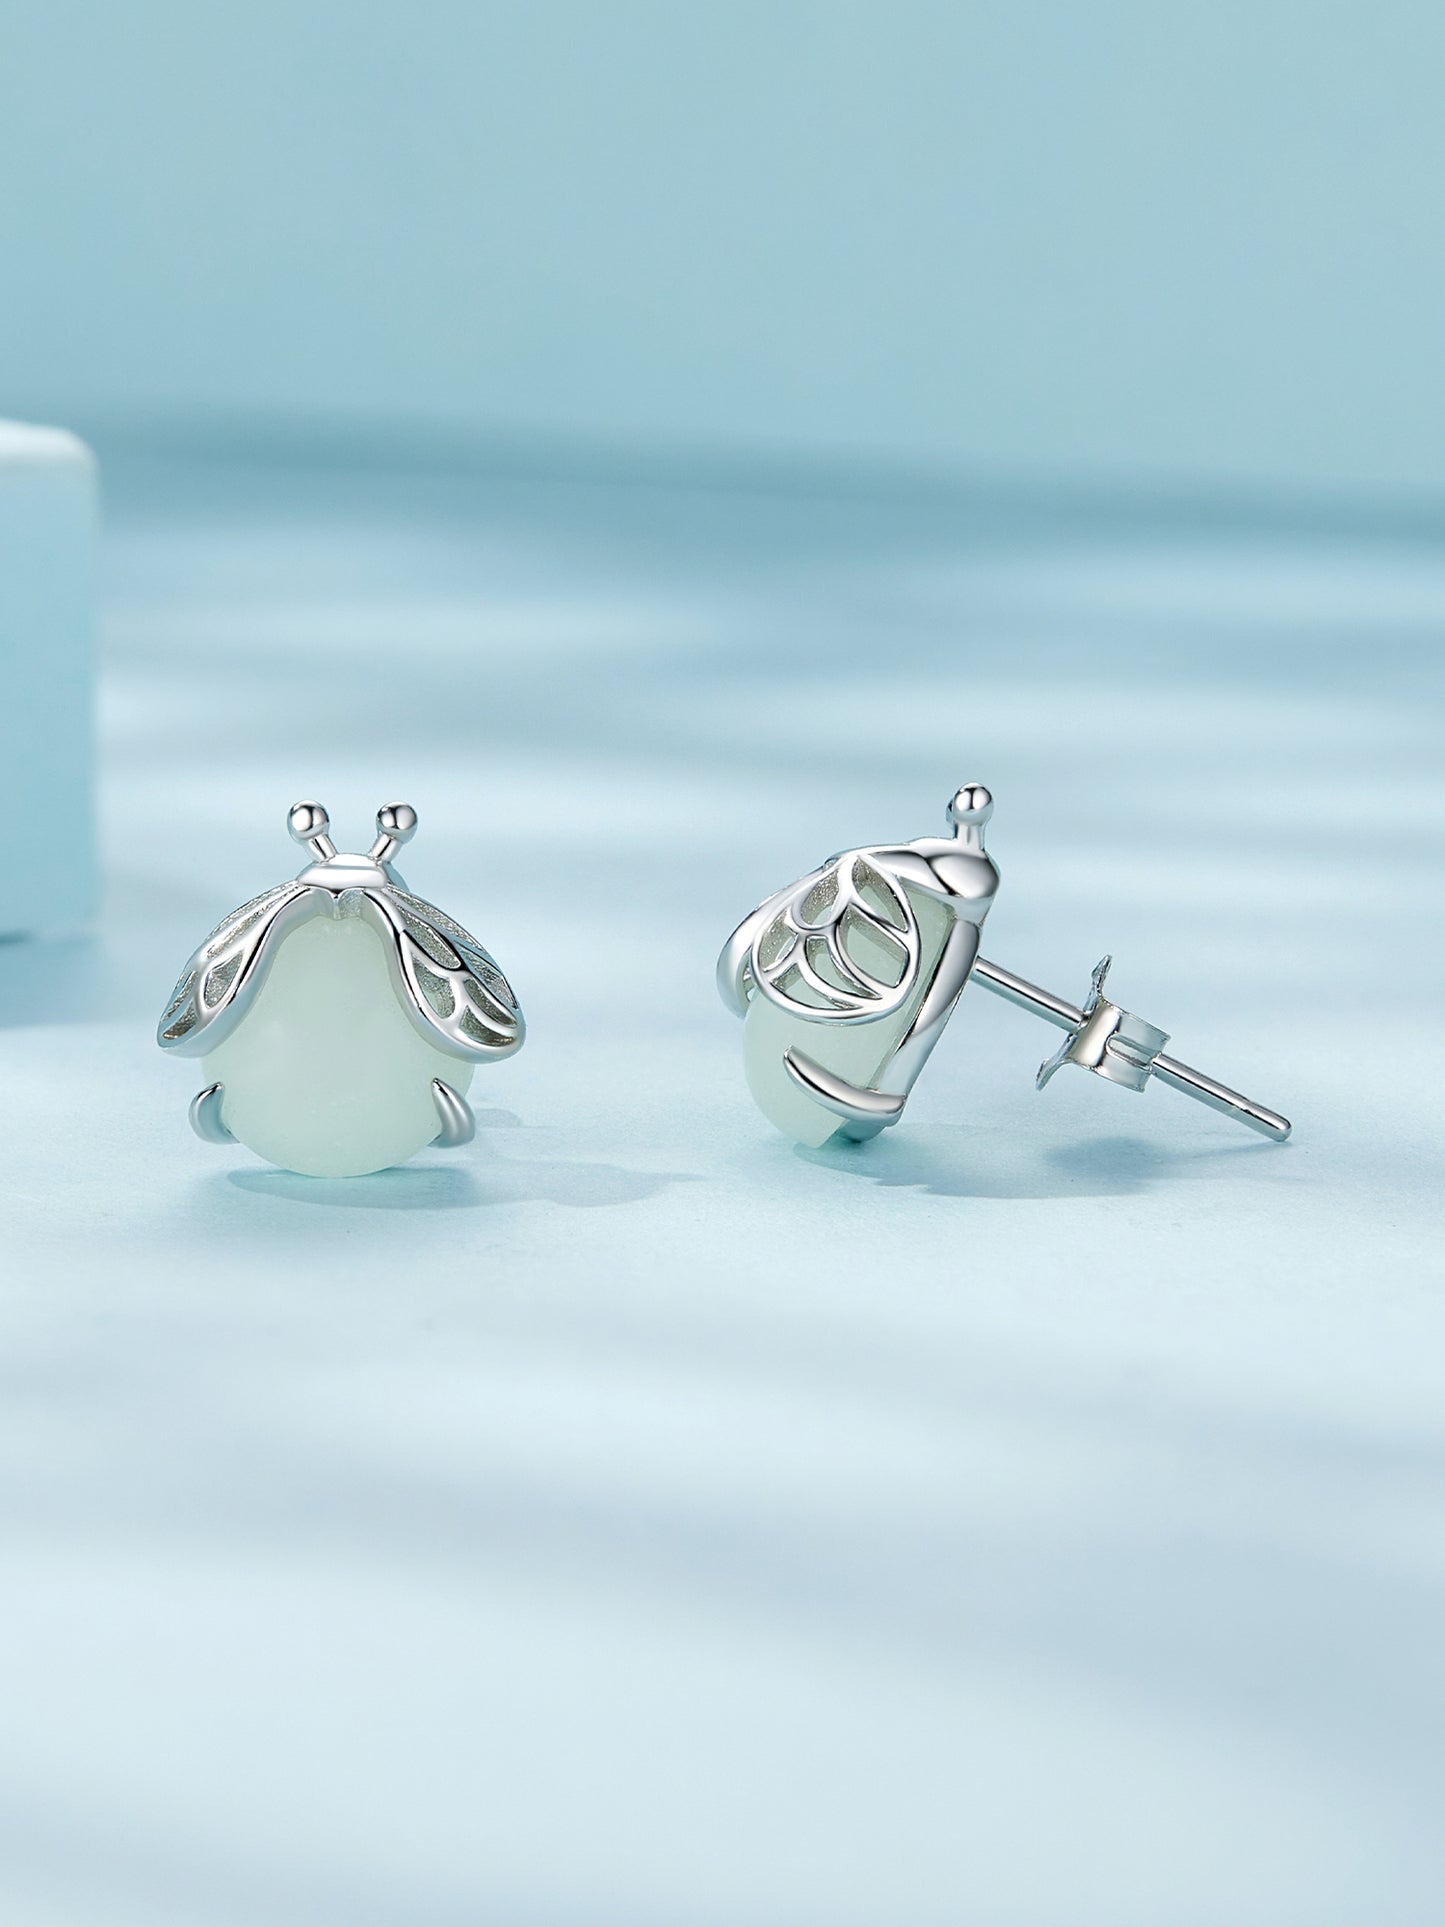 Glowworm earrings,  92.5% Sterling Silver,  Luminous stone ear stud